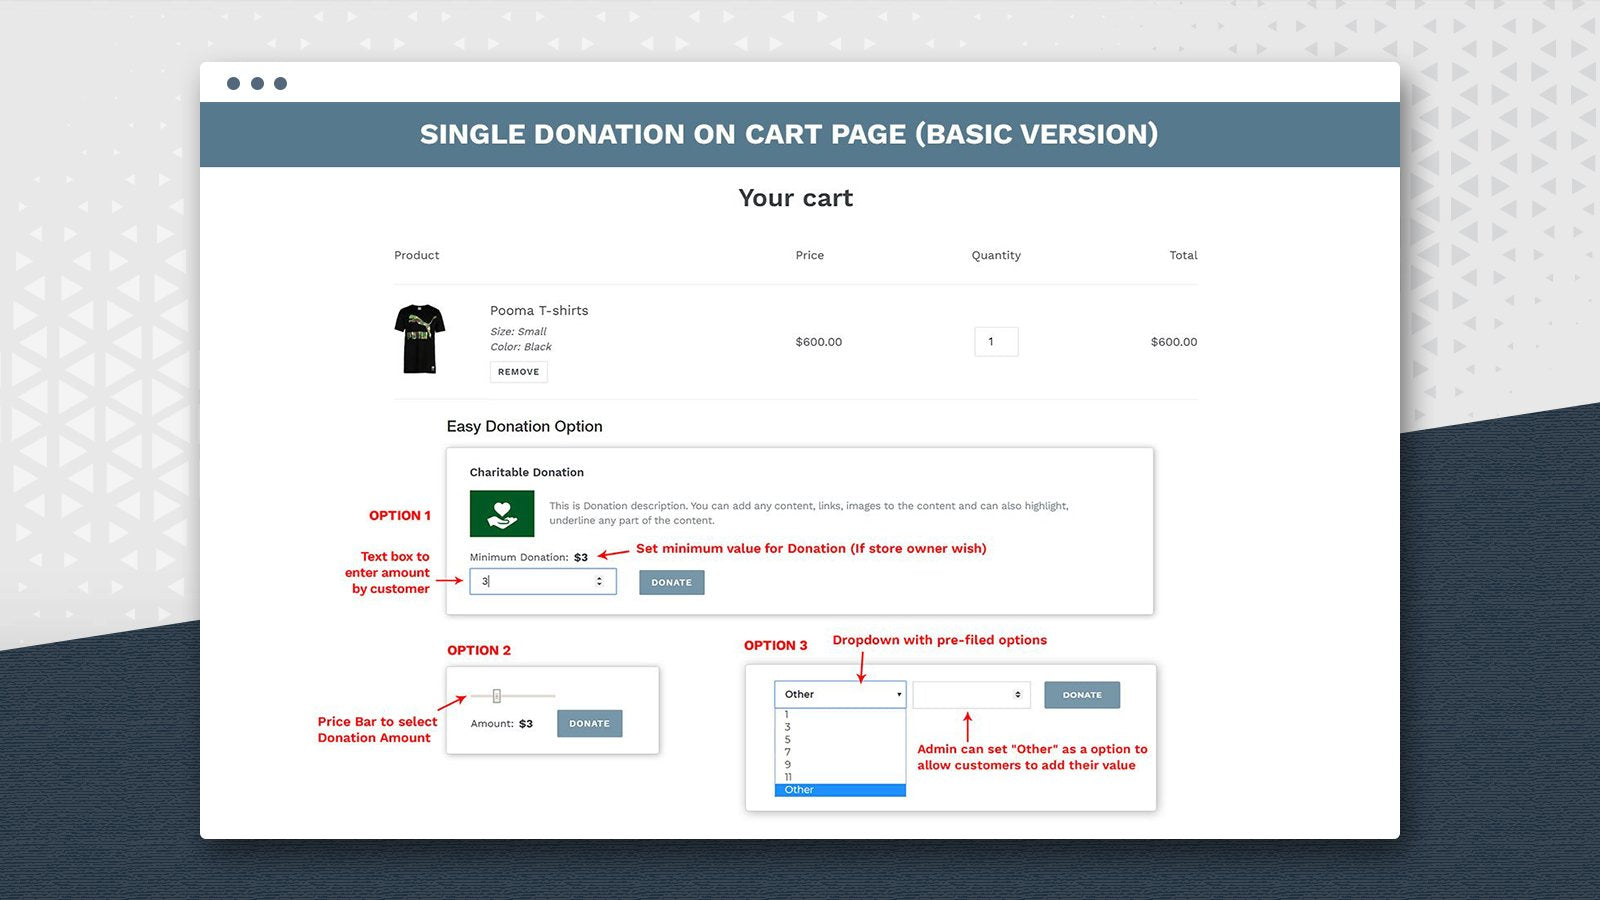 Esempio di come Easy Donation può essere integrato al checkout tramite menù a tendina, barra di selezione o importo scritto